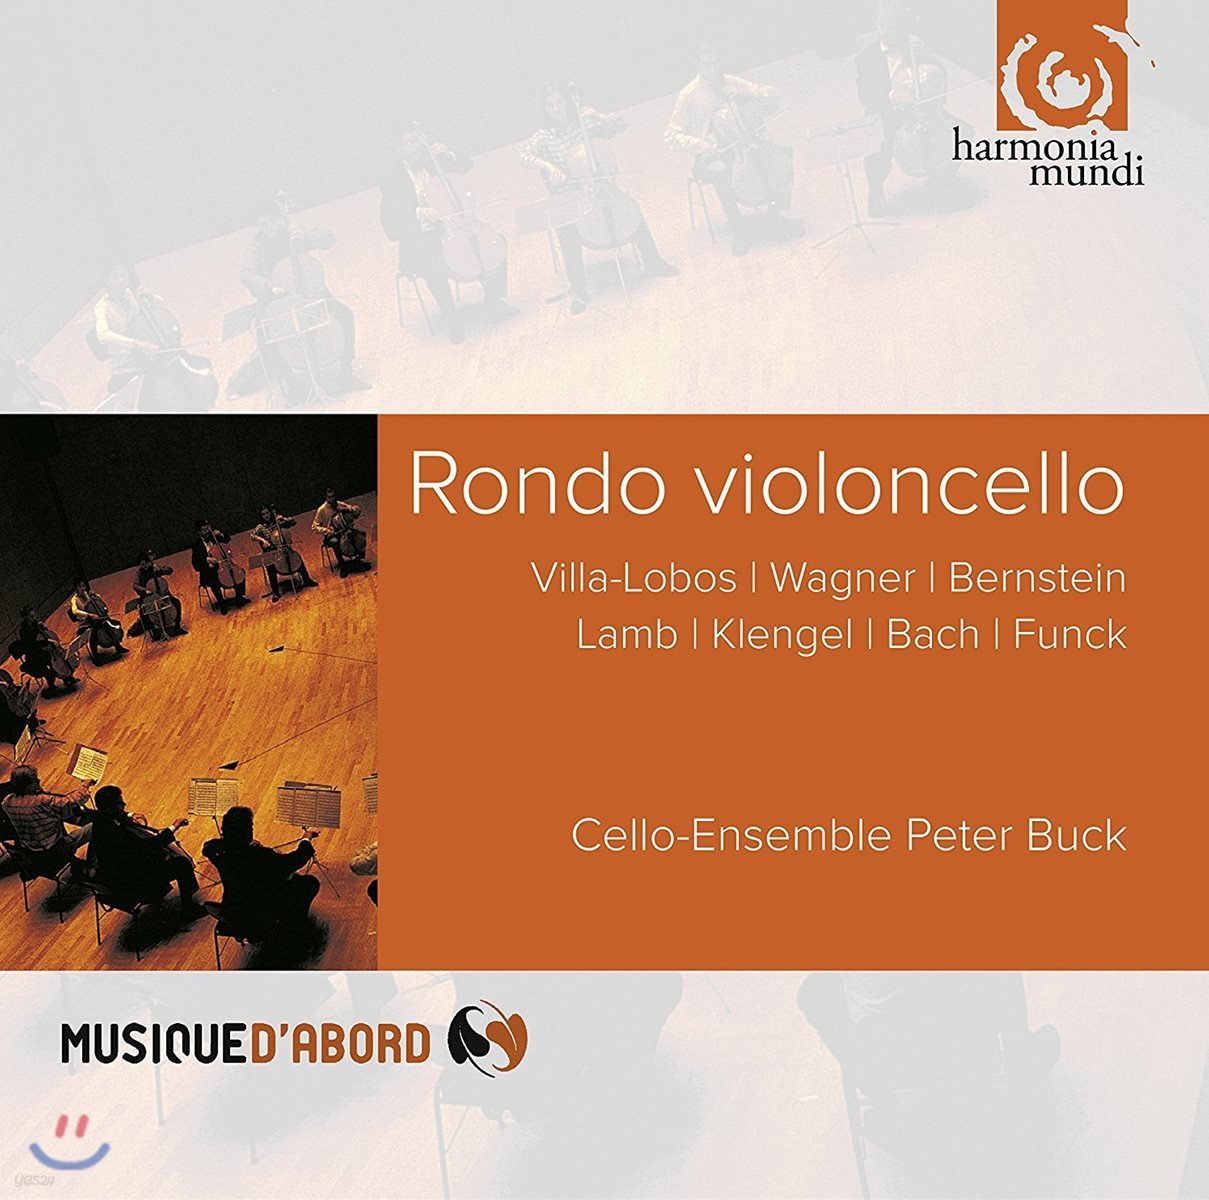 Cello-Ensemble Peter Buck 론도 비올론첼로 - 빌라-로보스 / 바그너 / 번스타인 / 바흐 (Rondo Violoncello - Villa-Lobos / Wagner / Bernstein / J.S. Bach) 첼로 앙상블 피터 벅